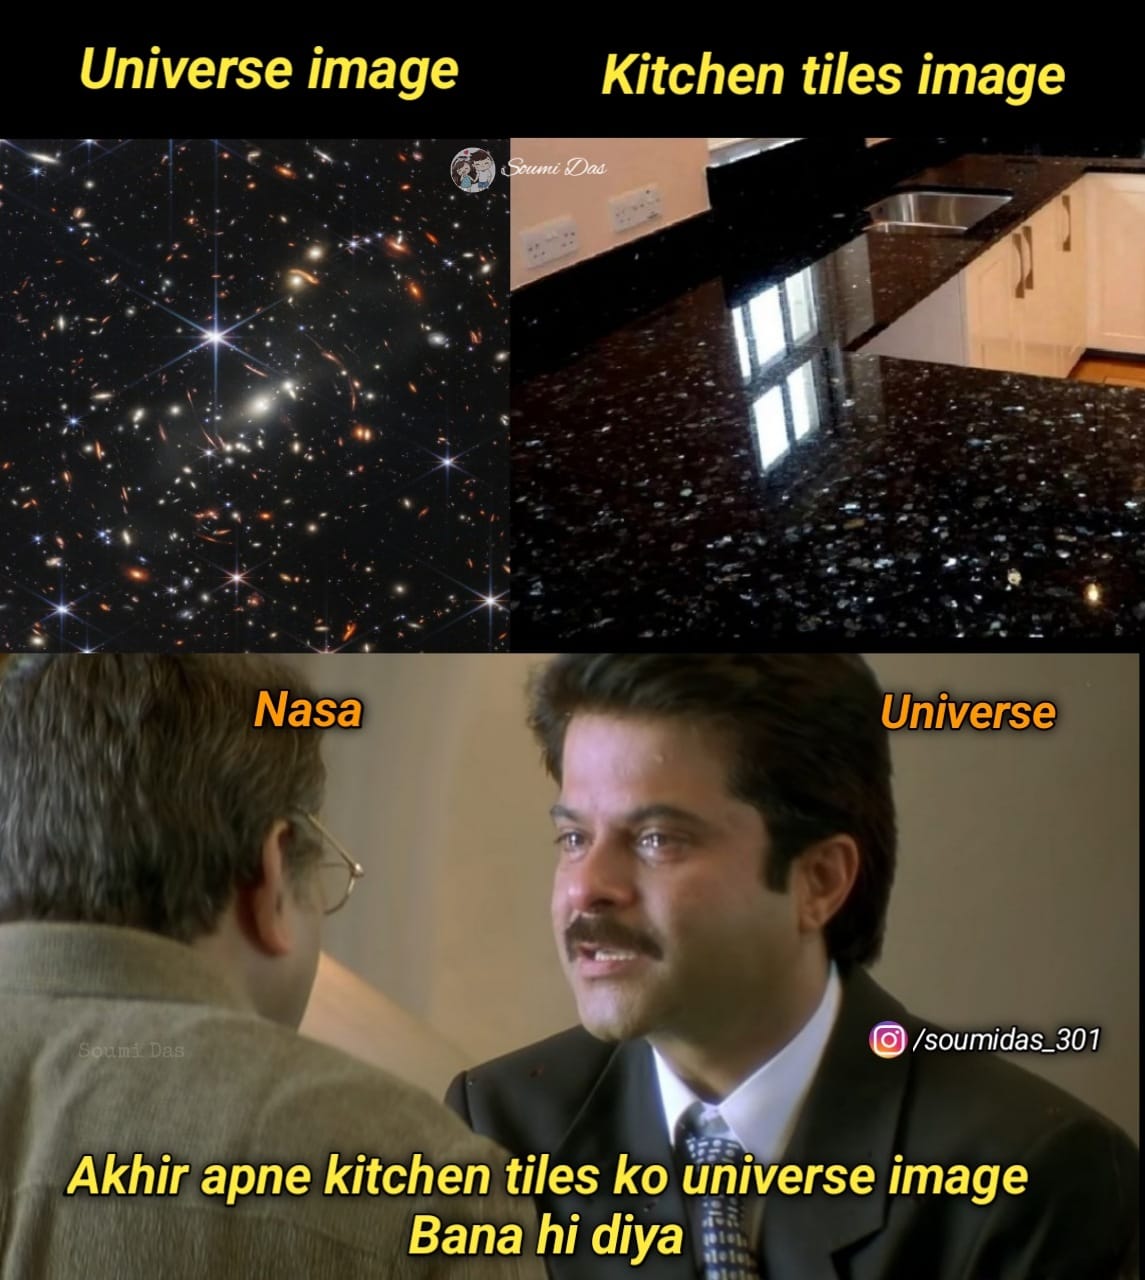 Akhir aapne kitchen tiles ko universe image bana hi diya meme